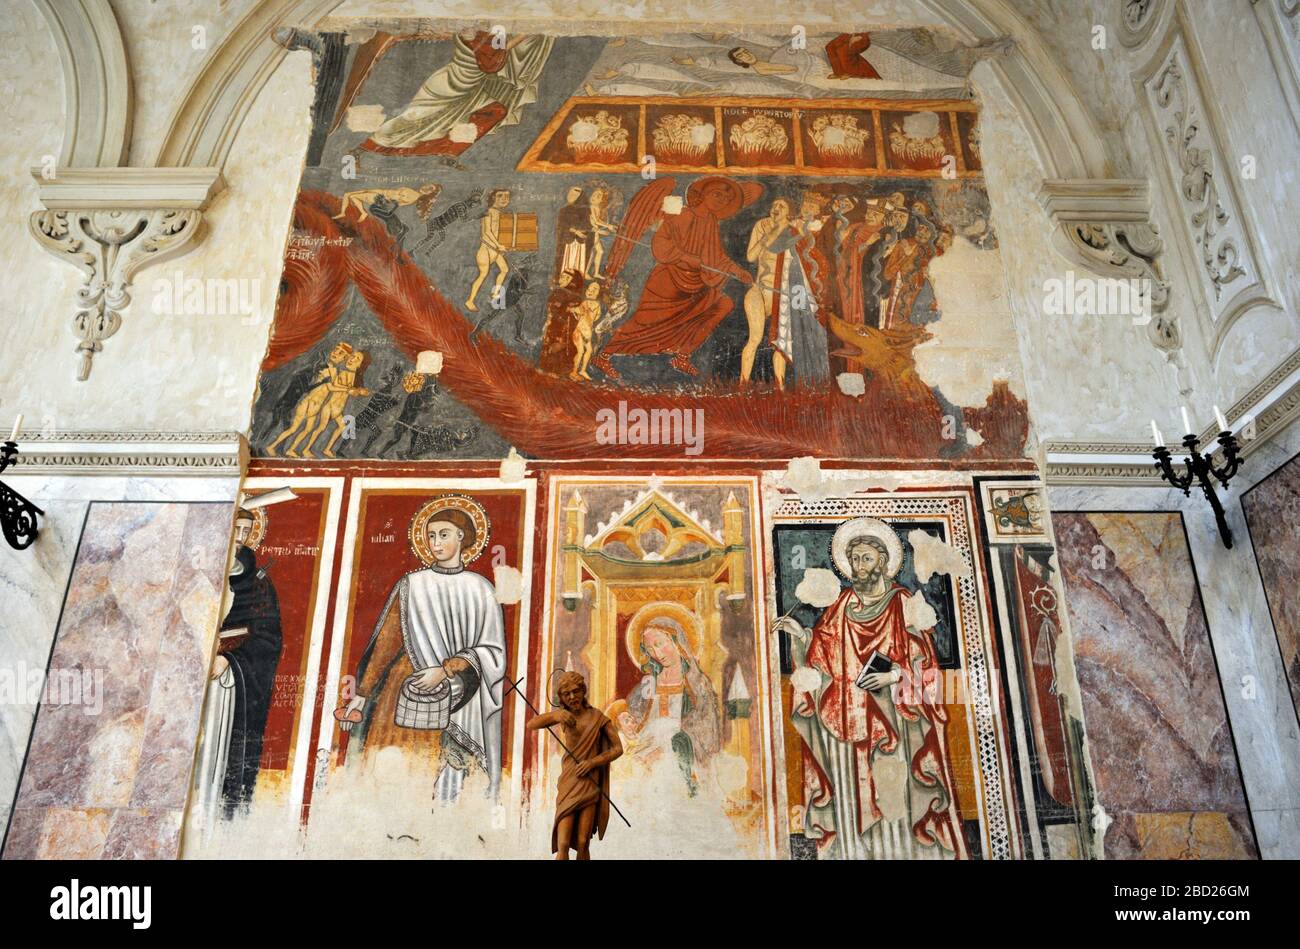 Italy, Basilicata, Matera, cathedral interior, medieval paintings Stock Photo